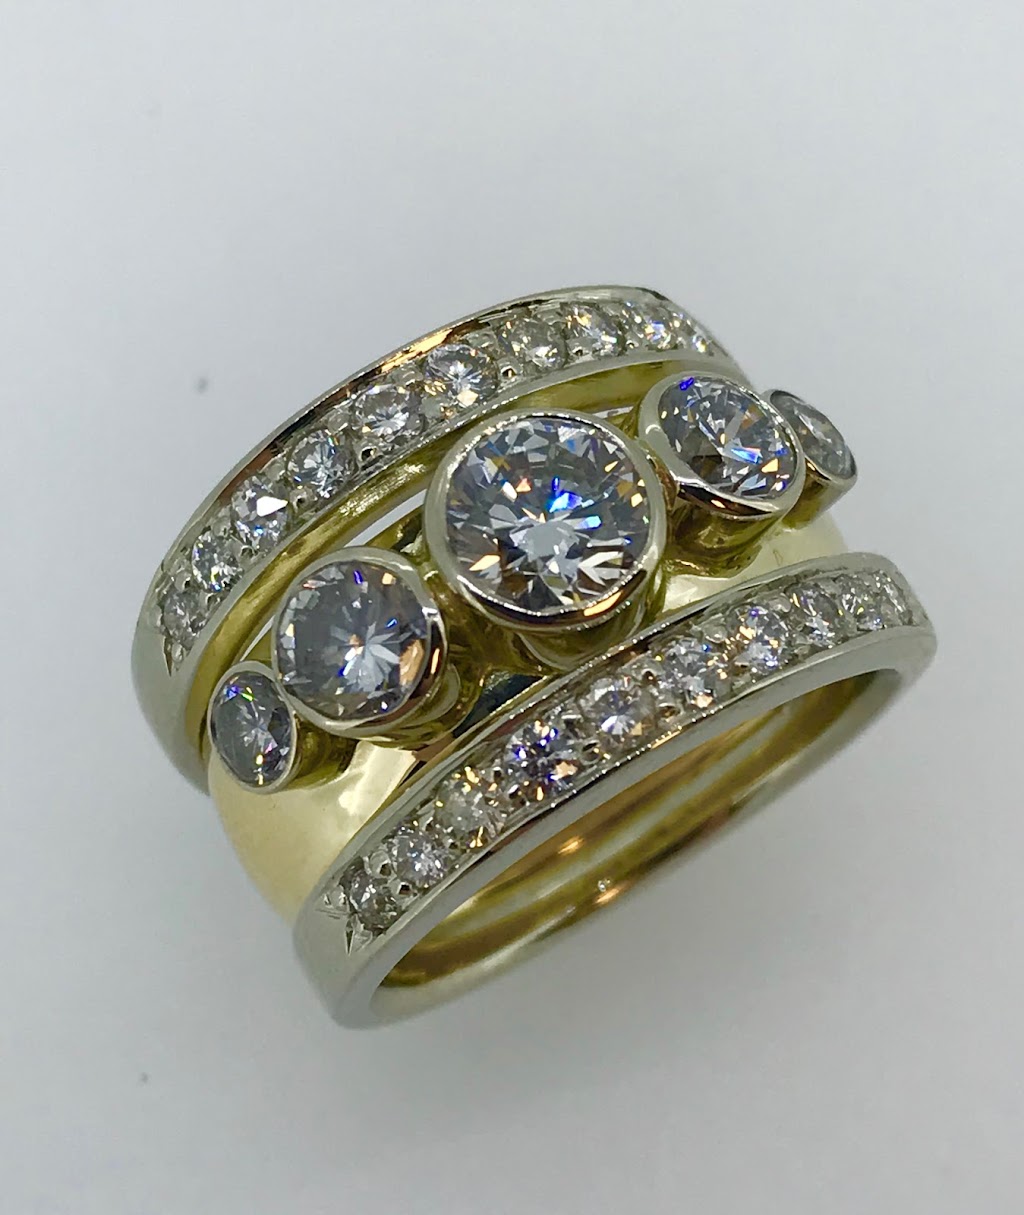 M Grosser Jewelry Design | 580 E Carmel Dr Suite 130, Carmel, IN 46032, USA | Phone: (317) 663-7000